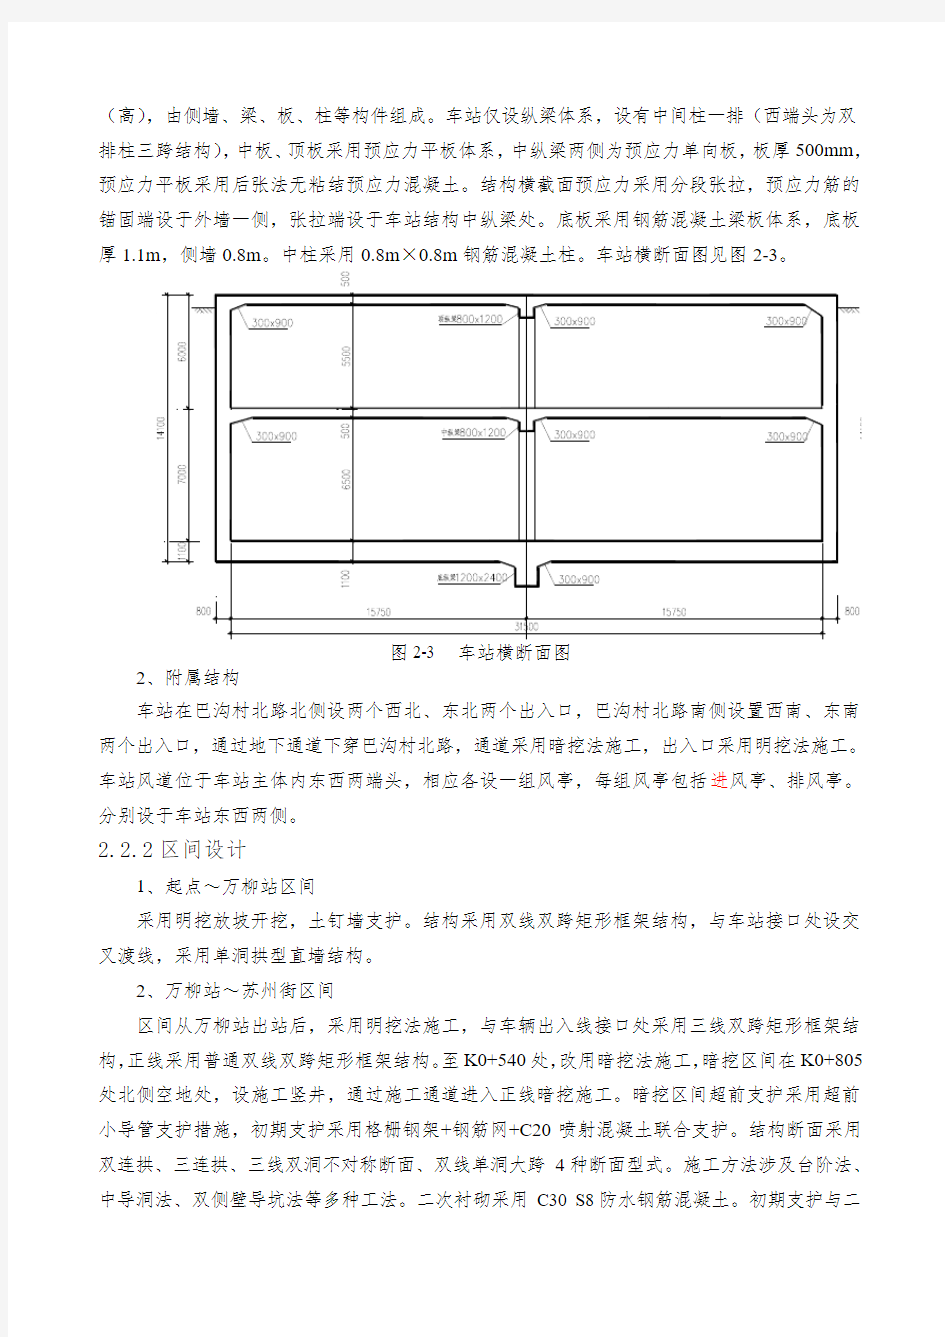 北京地铁十号线某标工程概况及重点难点施工方案